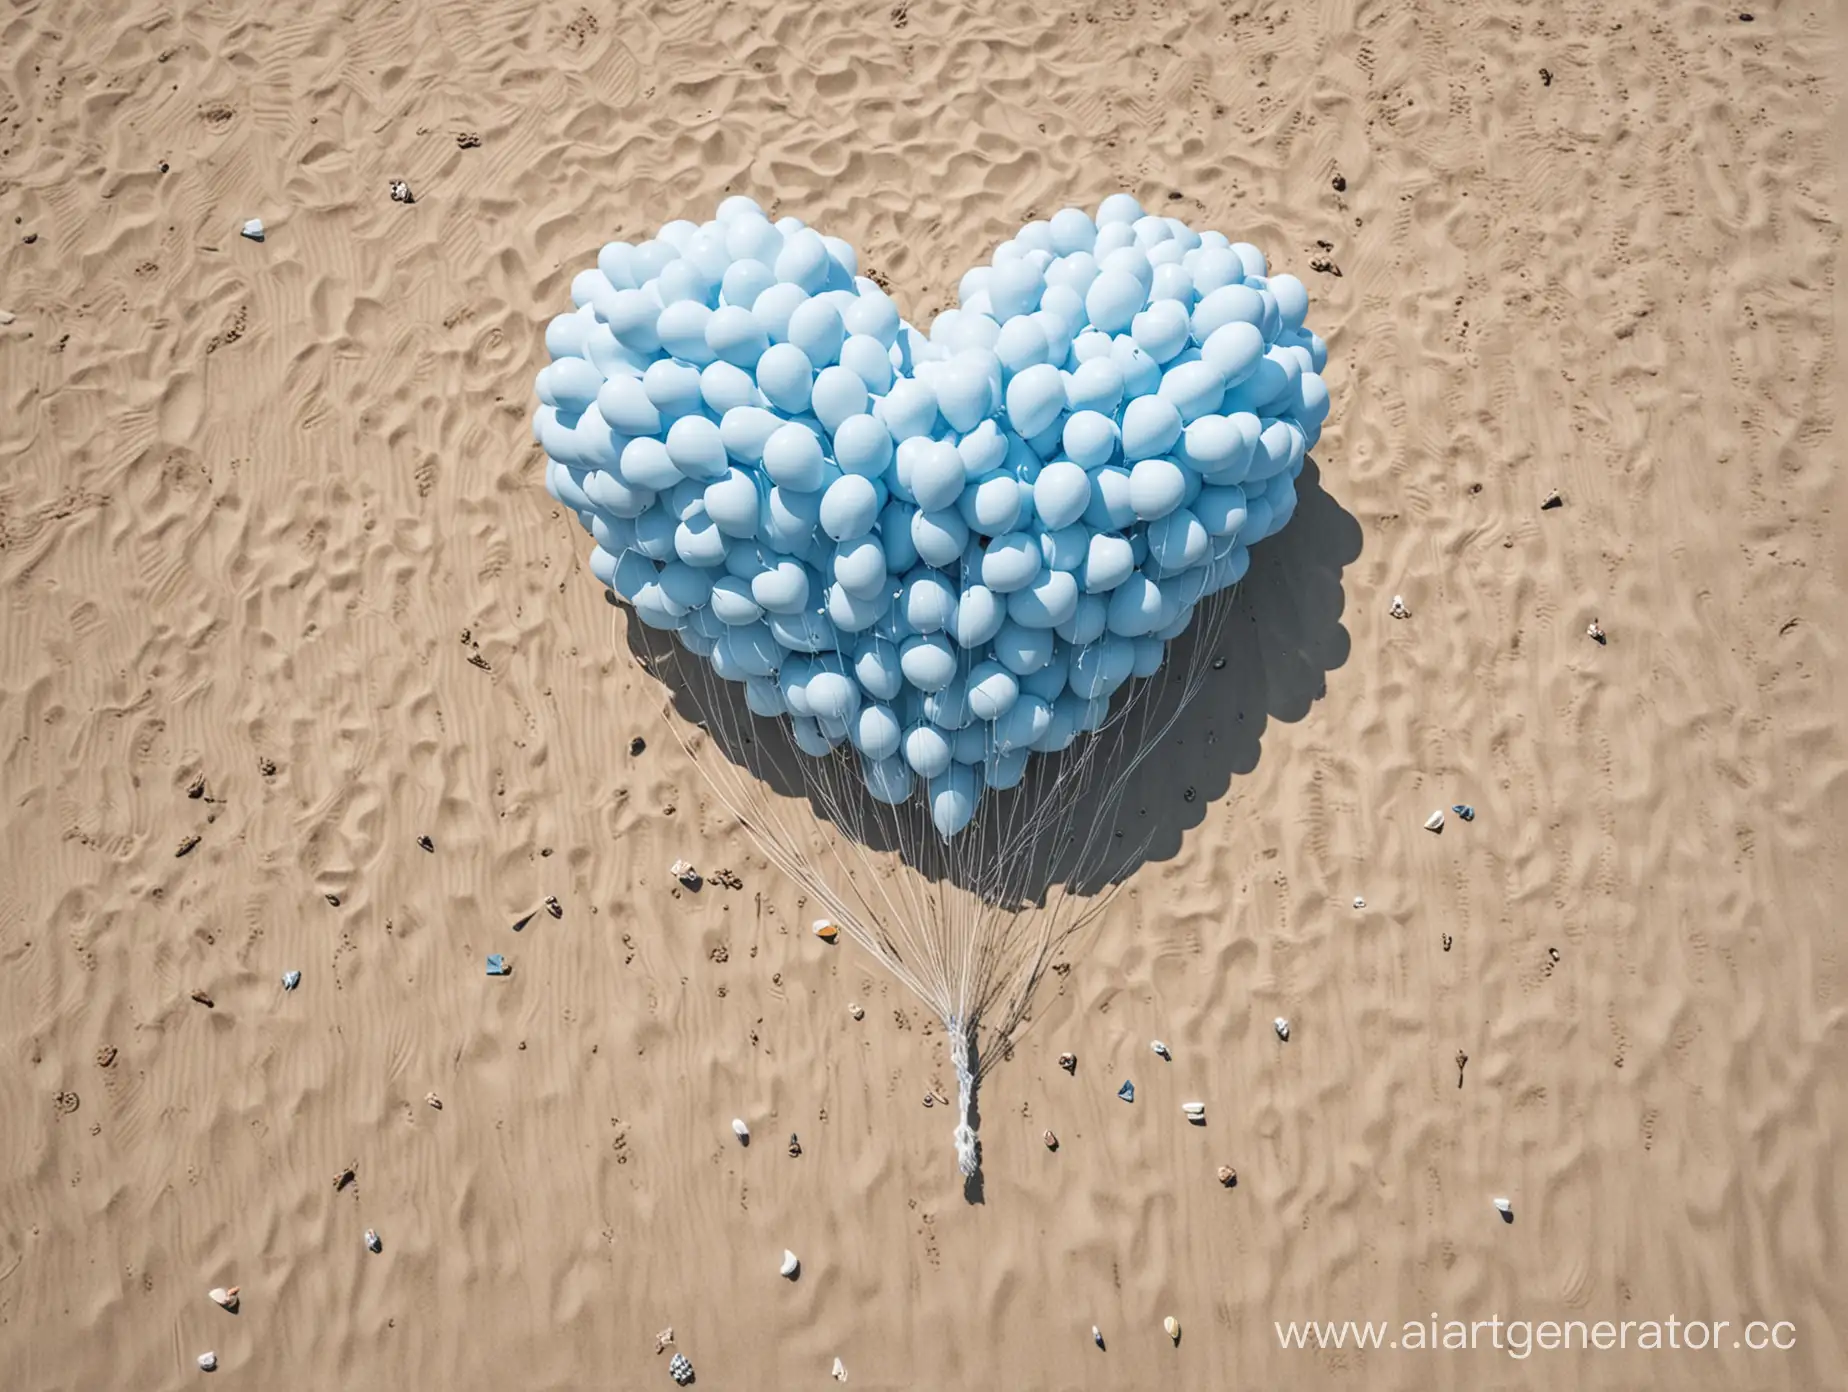 HeartShaped-Balloon-Display-on-Beach